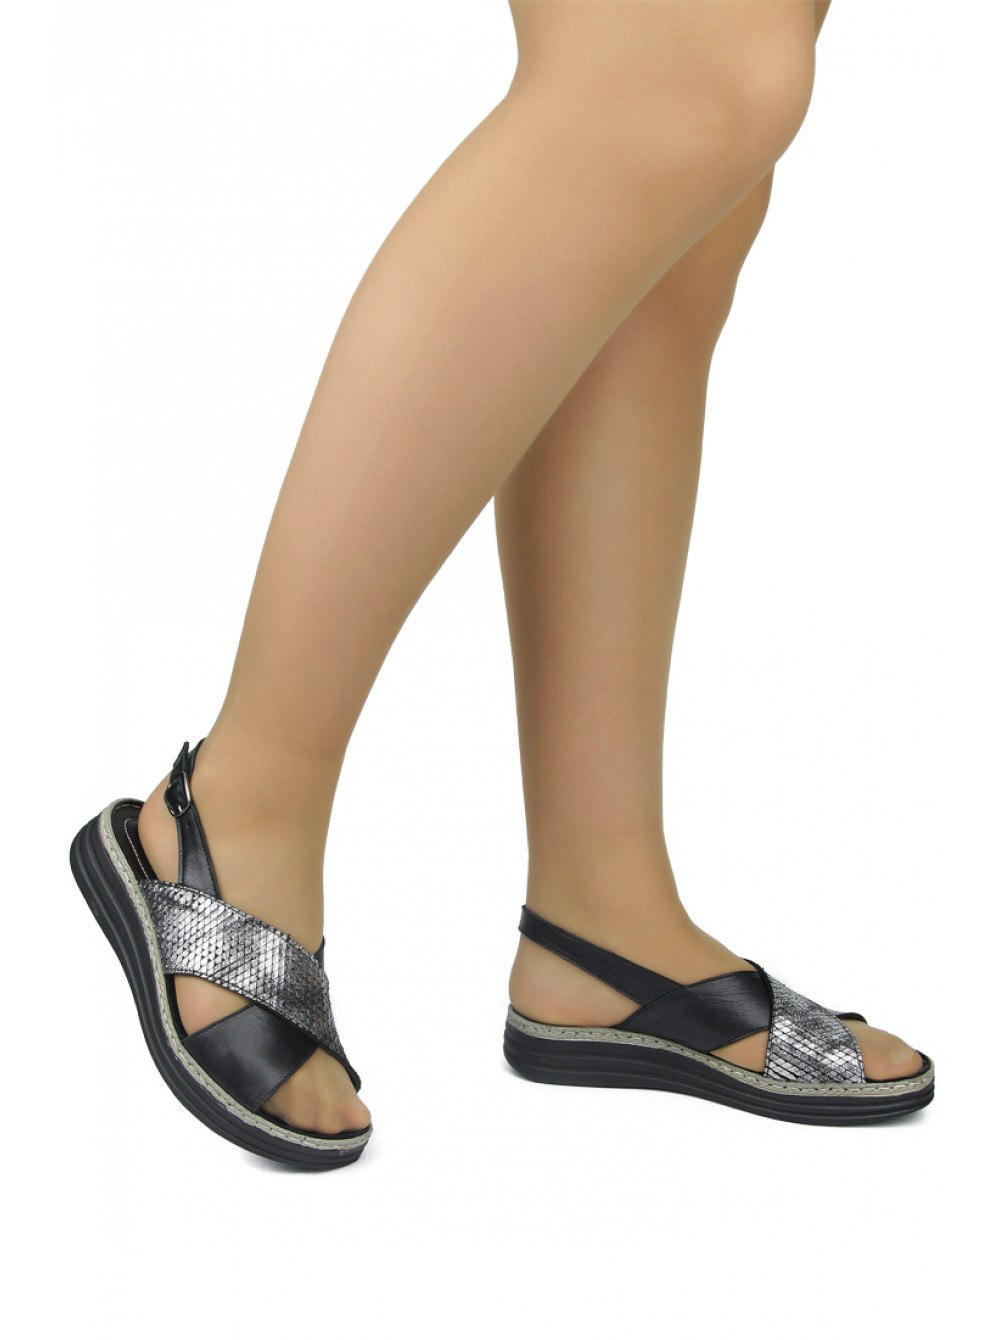 Вайлдберриз интернет обувь женская летняя. Босоножки 2022 женские на вайлдберриз. Обувь на валберис женская летняя босоножки. DAKKEM турецкая обувь. Обувь на валберис женская летняя босоножки на широкую ногу.